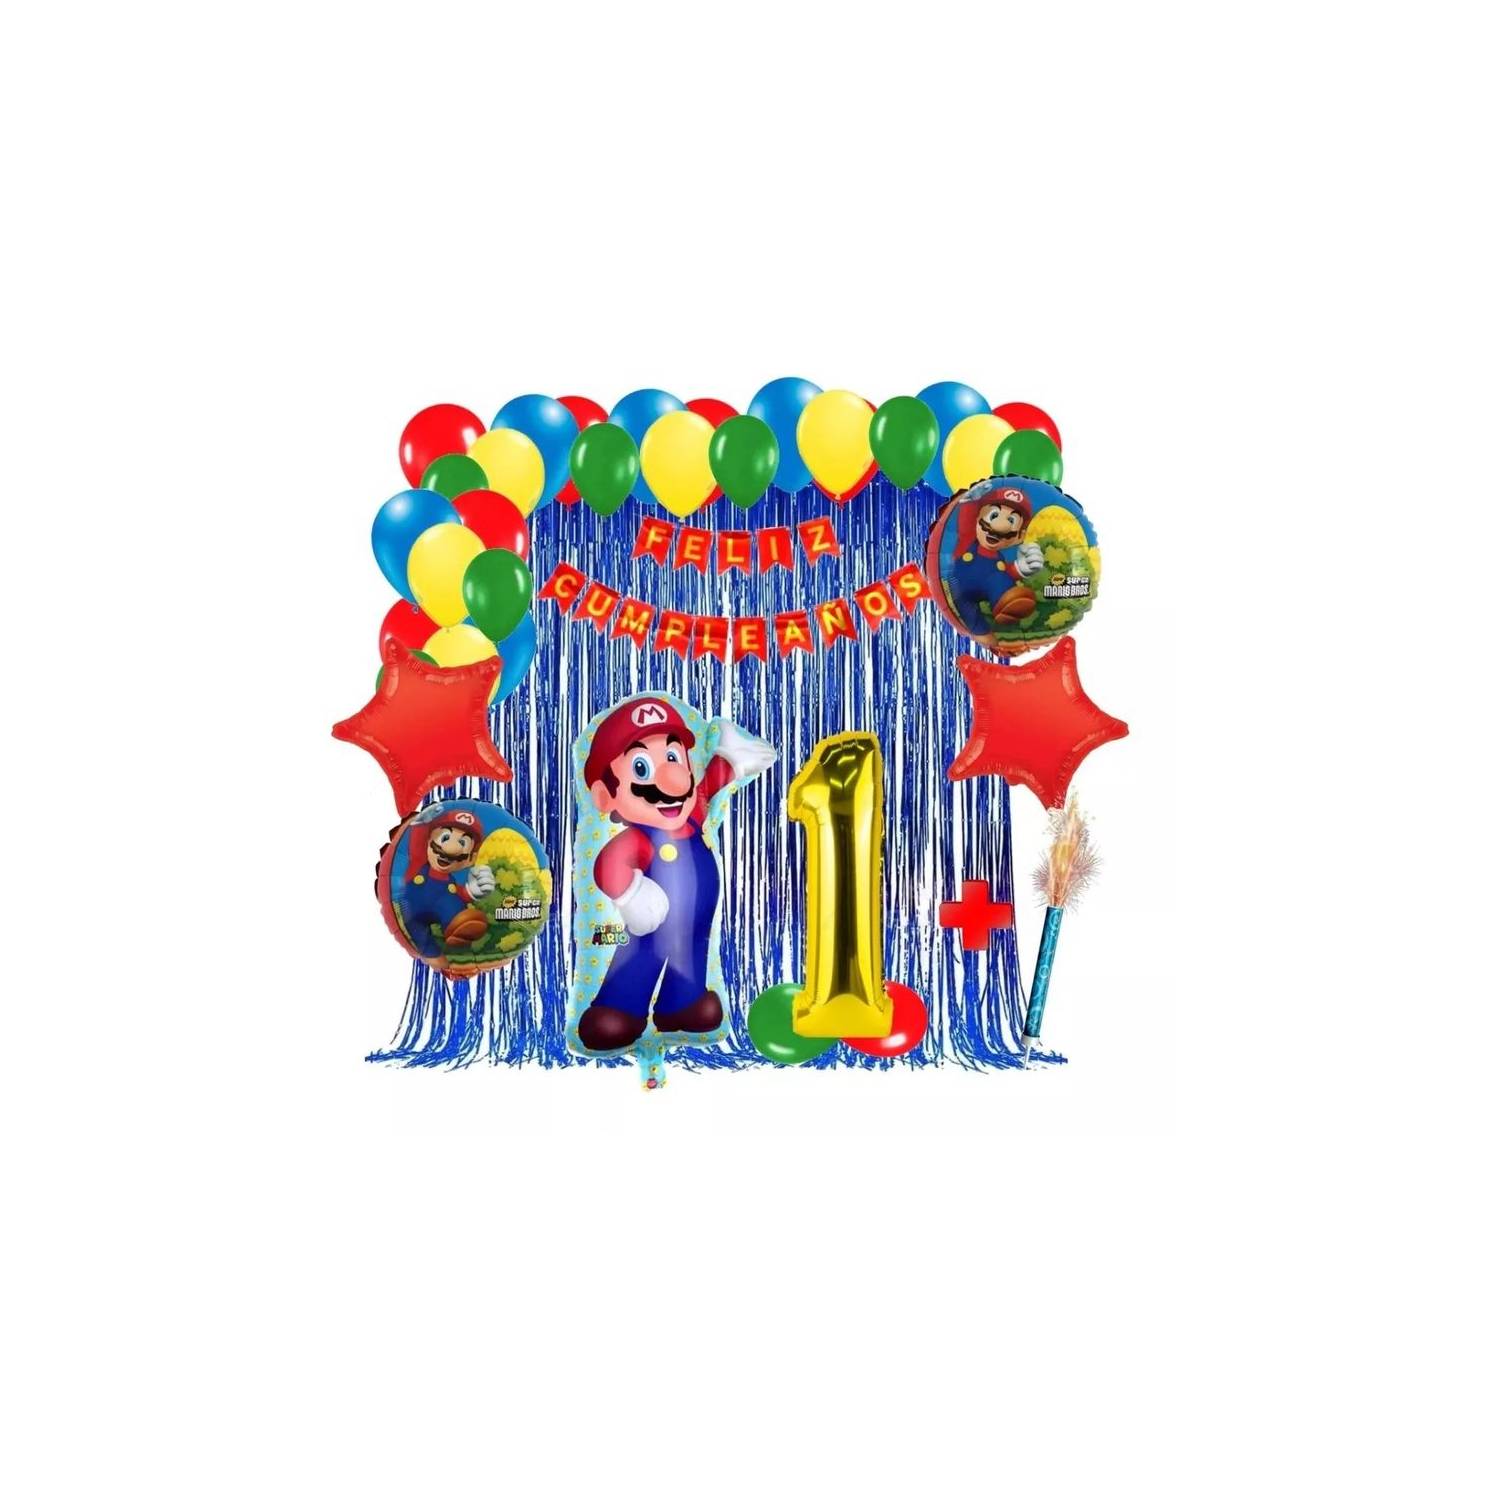 Kit decoración cumpleaños Mario Bros.